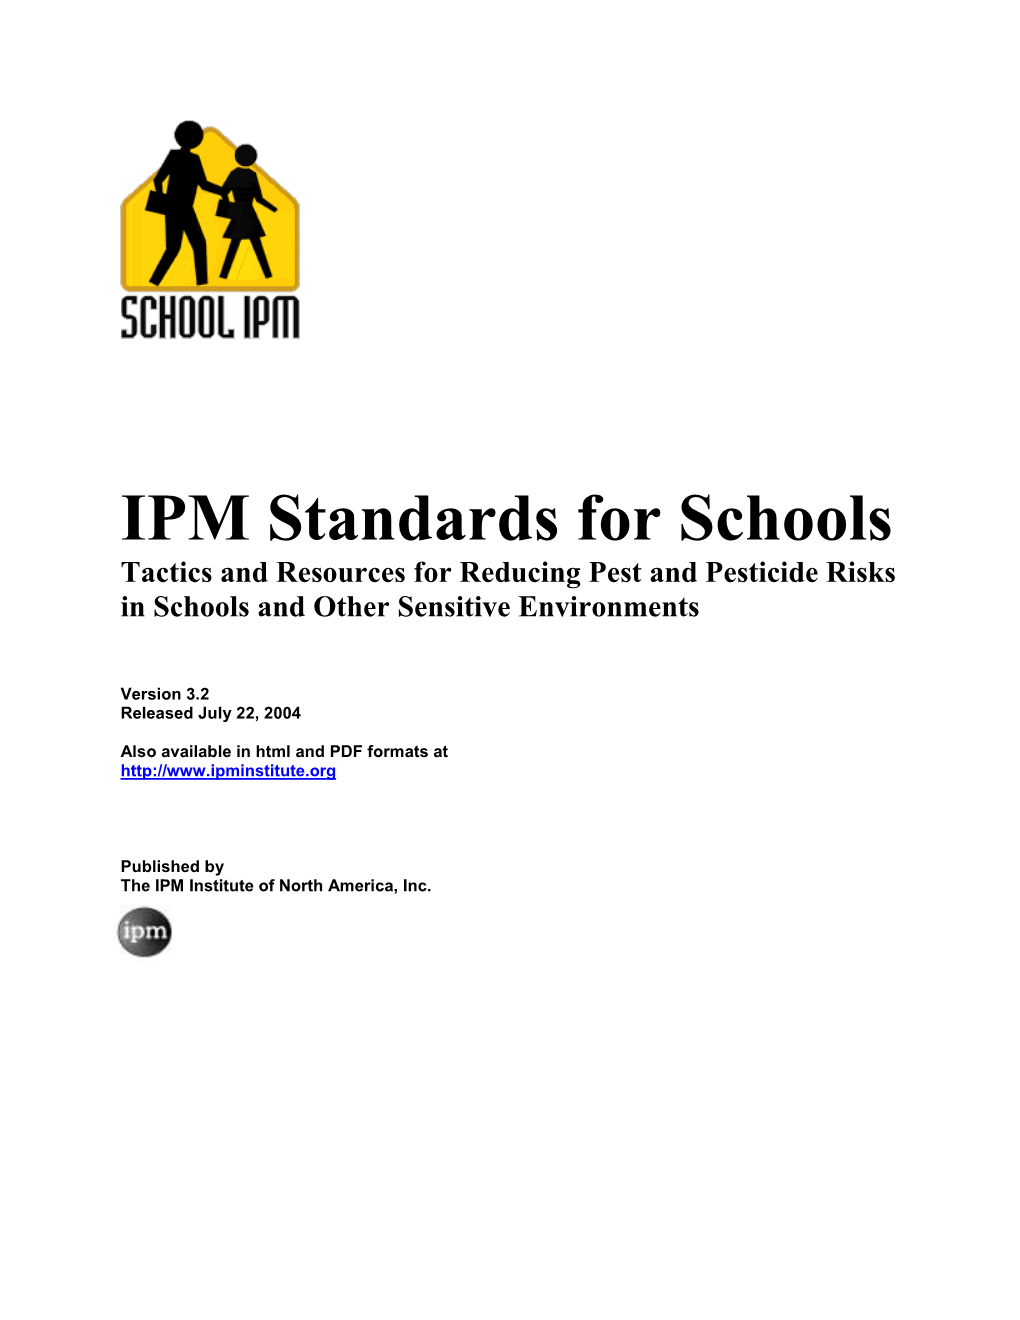 IPM Standards for School Interiors